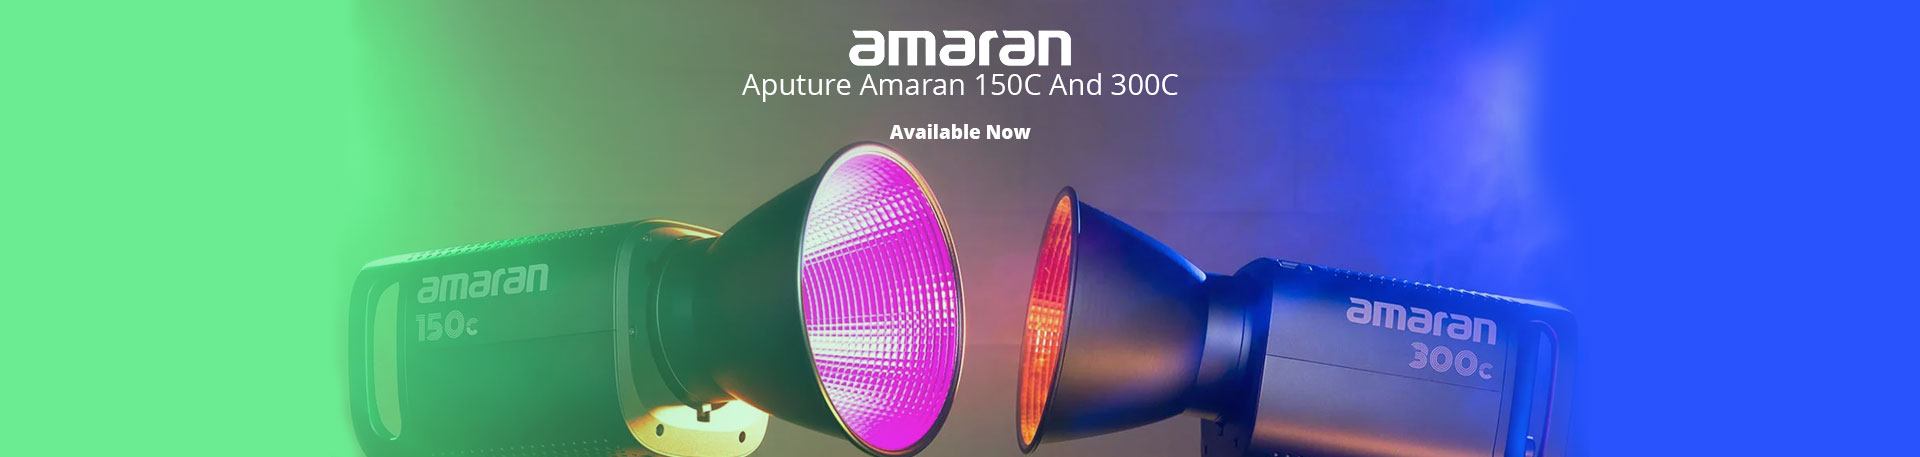 Amaran 150C And Amaran 300c